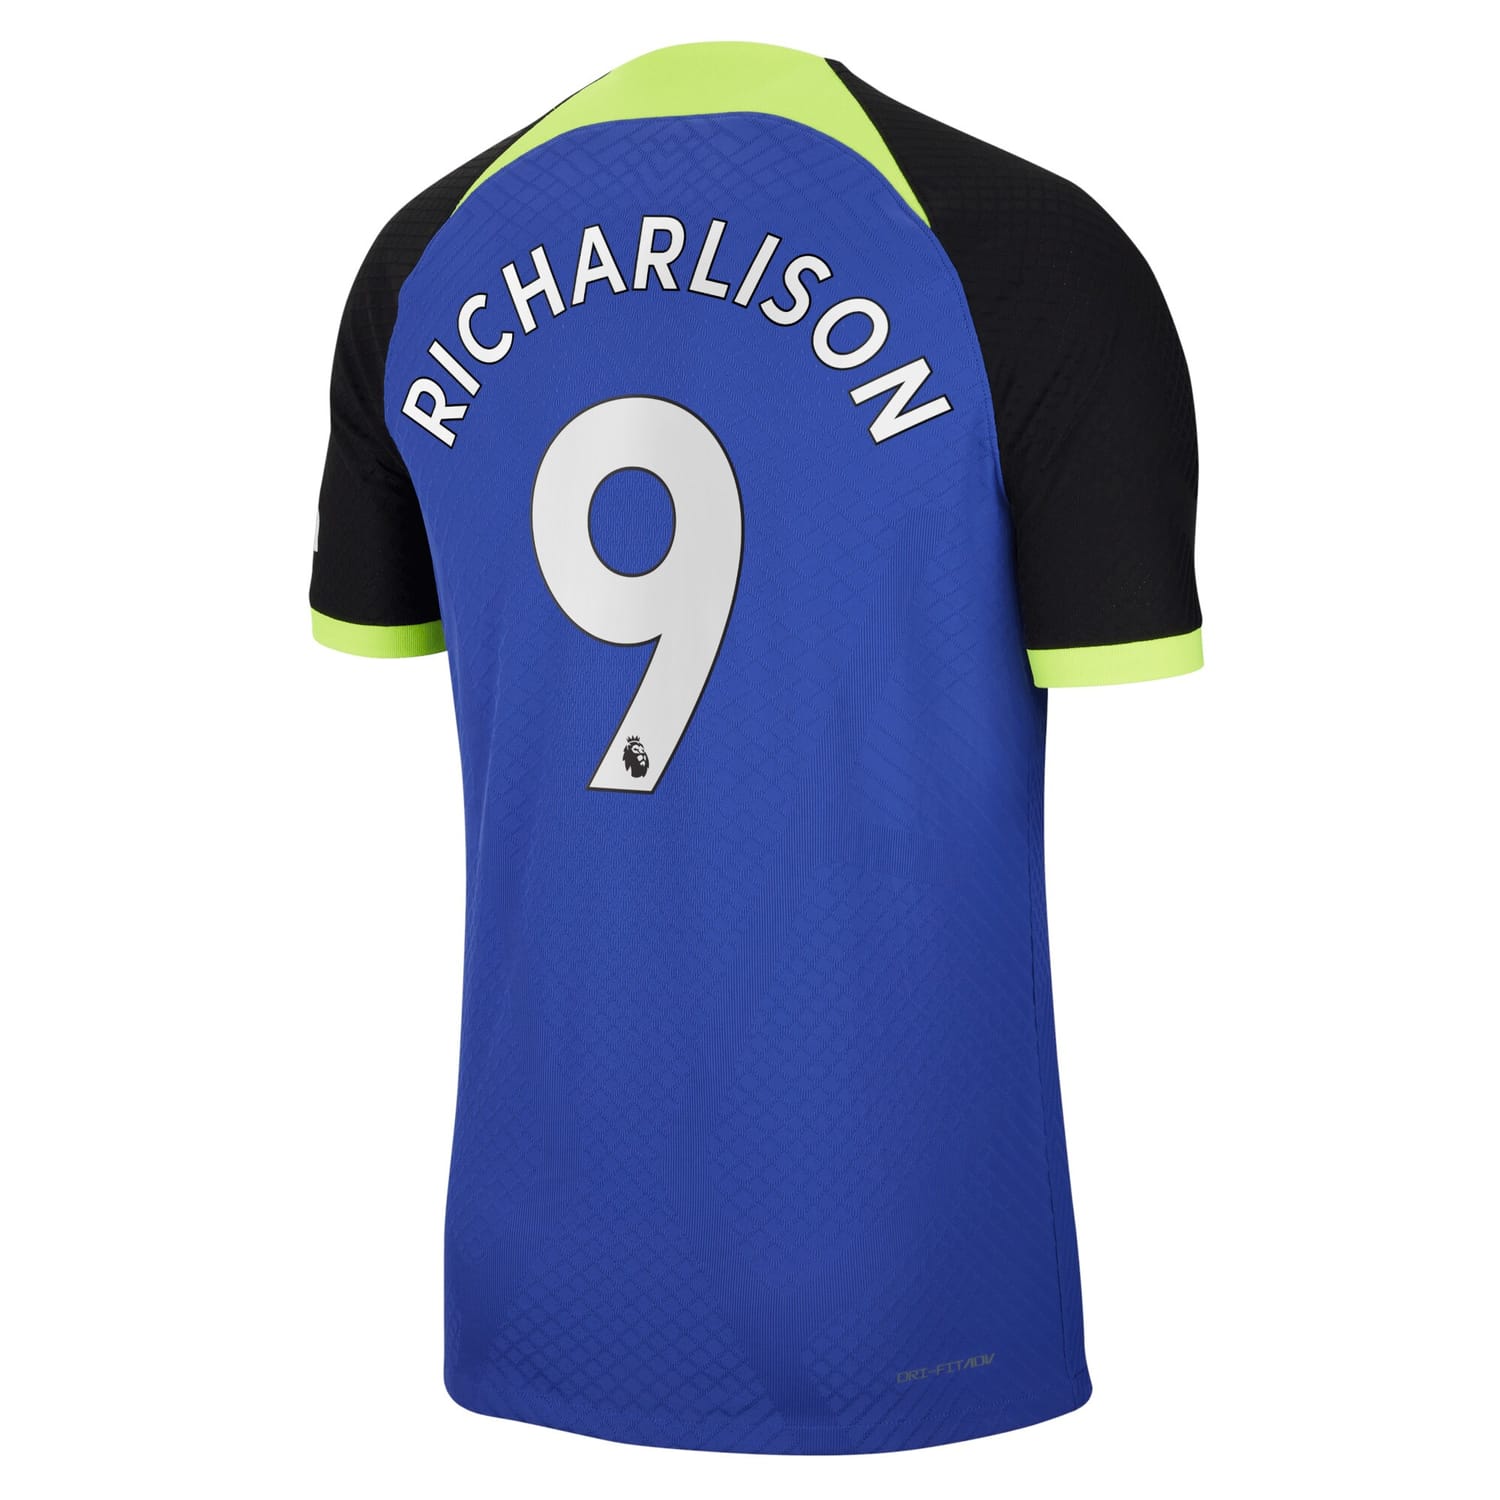 Premier League Tottenham Hotspur Away Authentic Jersey Shirt 2022-23 player Richarlison 9 printing for Men